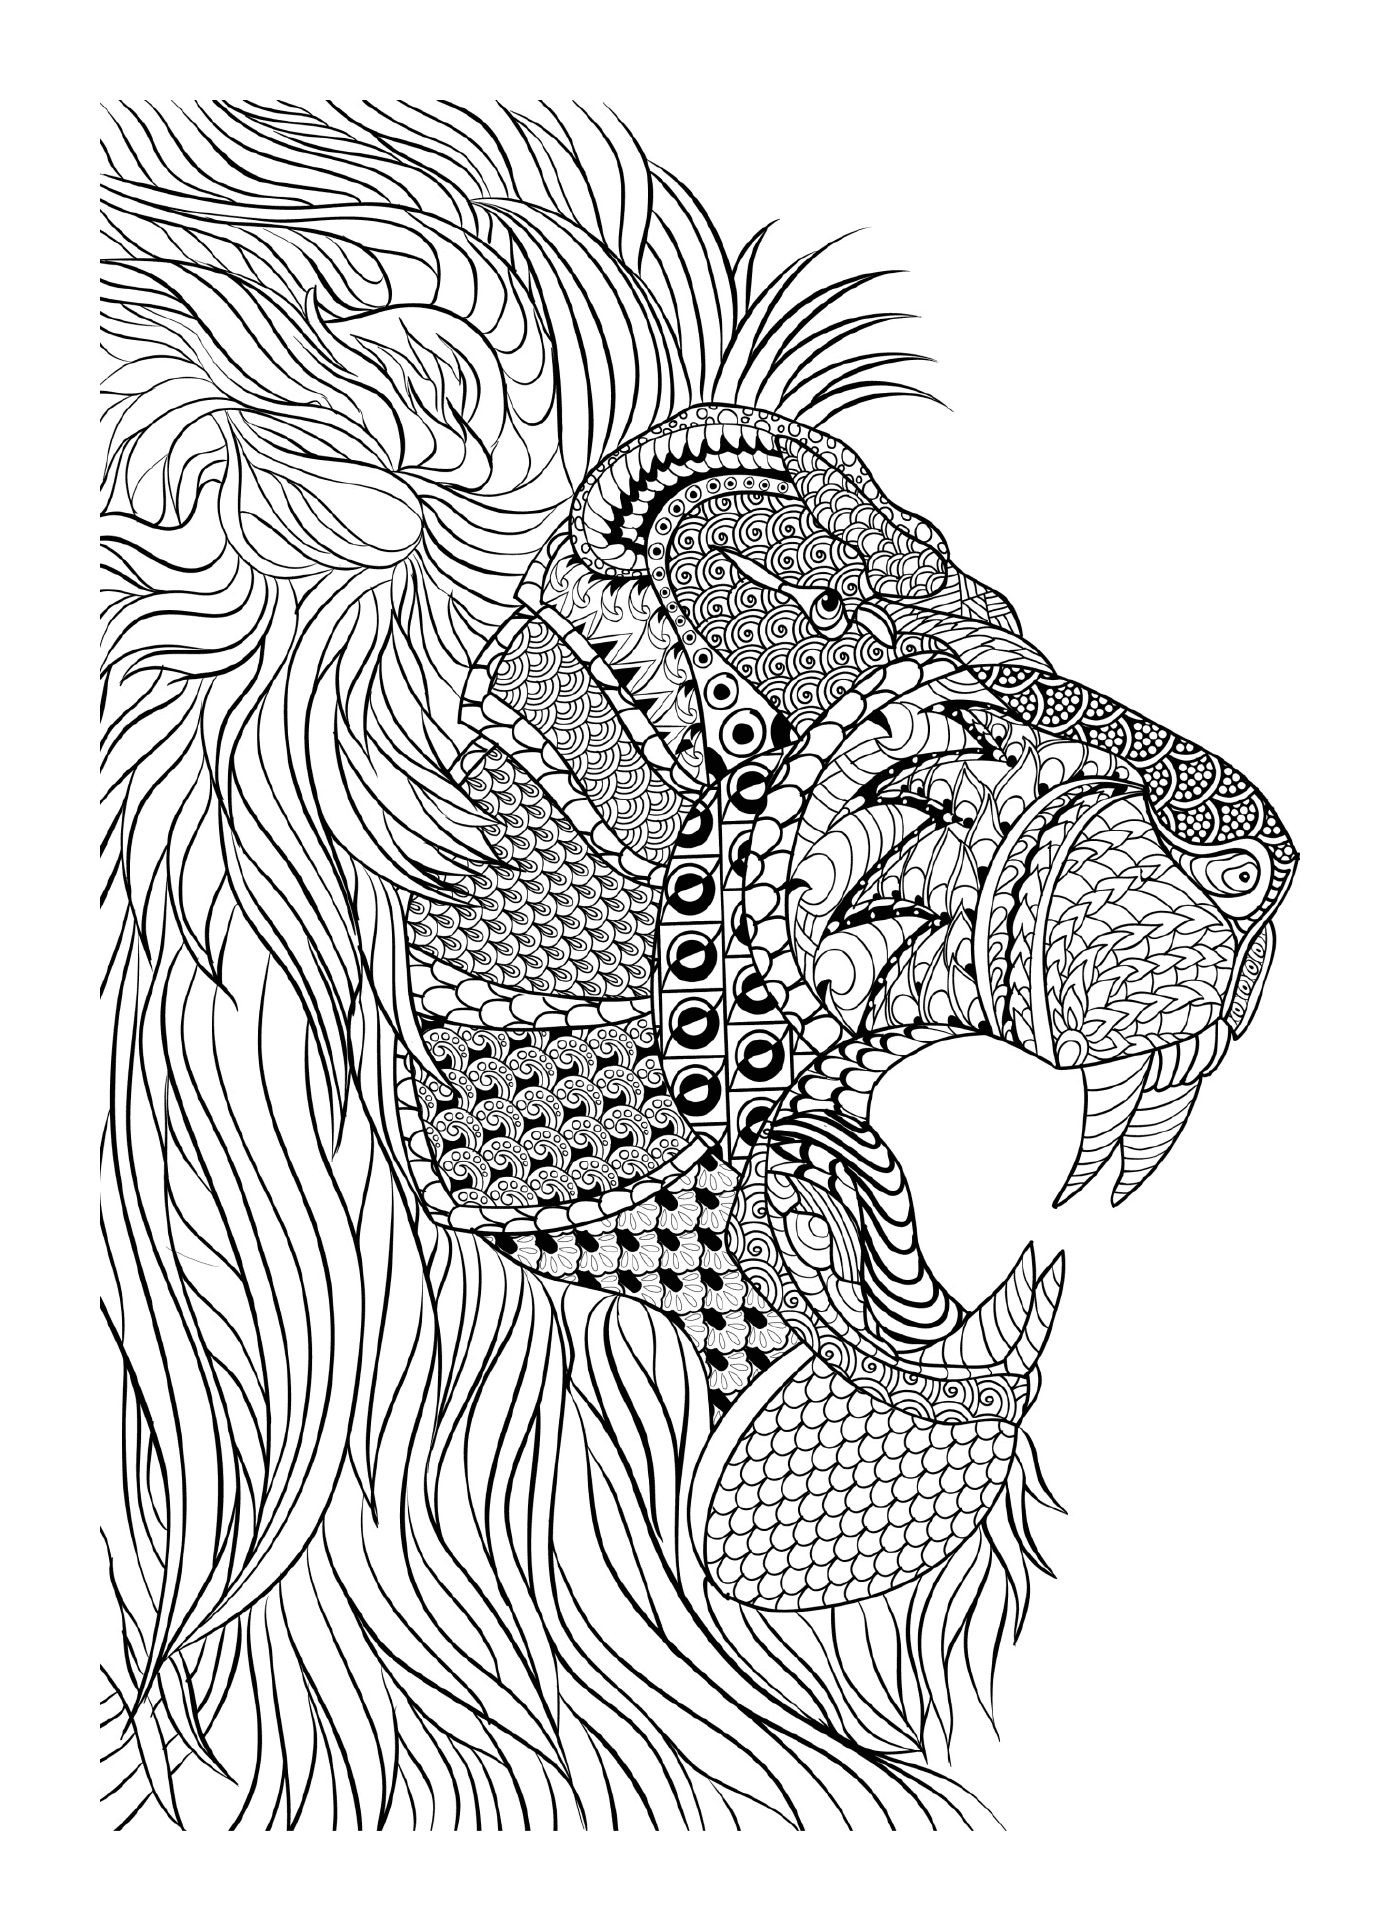  Um leão 